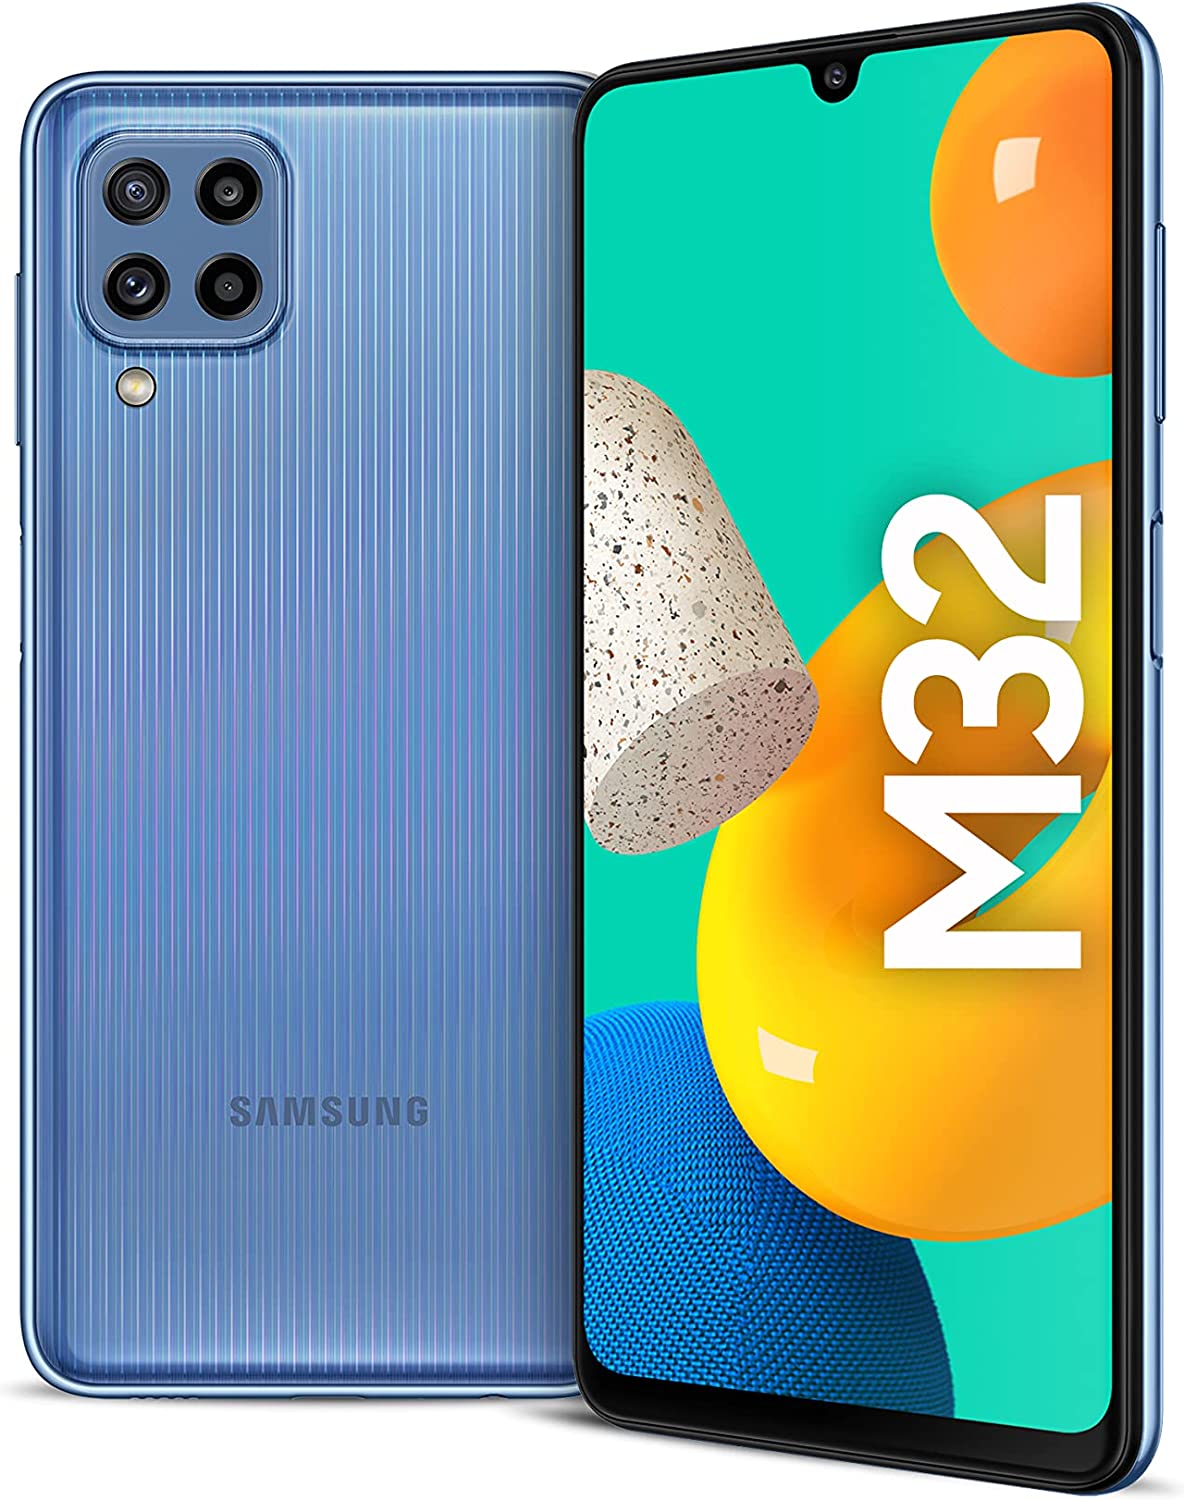 Samsung Galaxy M32 Lte Dual Sim Smartphone, 128Gb Storage And 6Gb Ram (Blue)